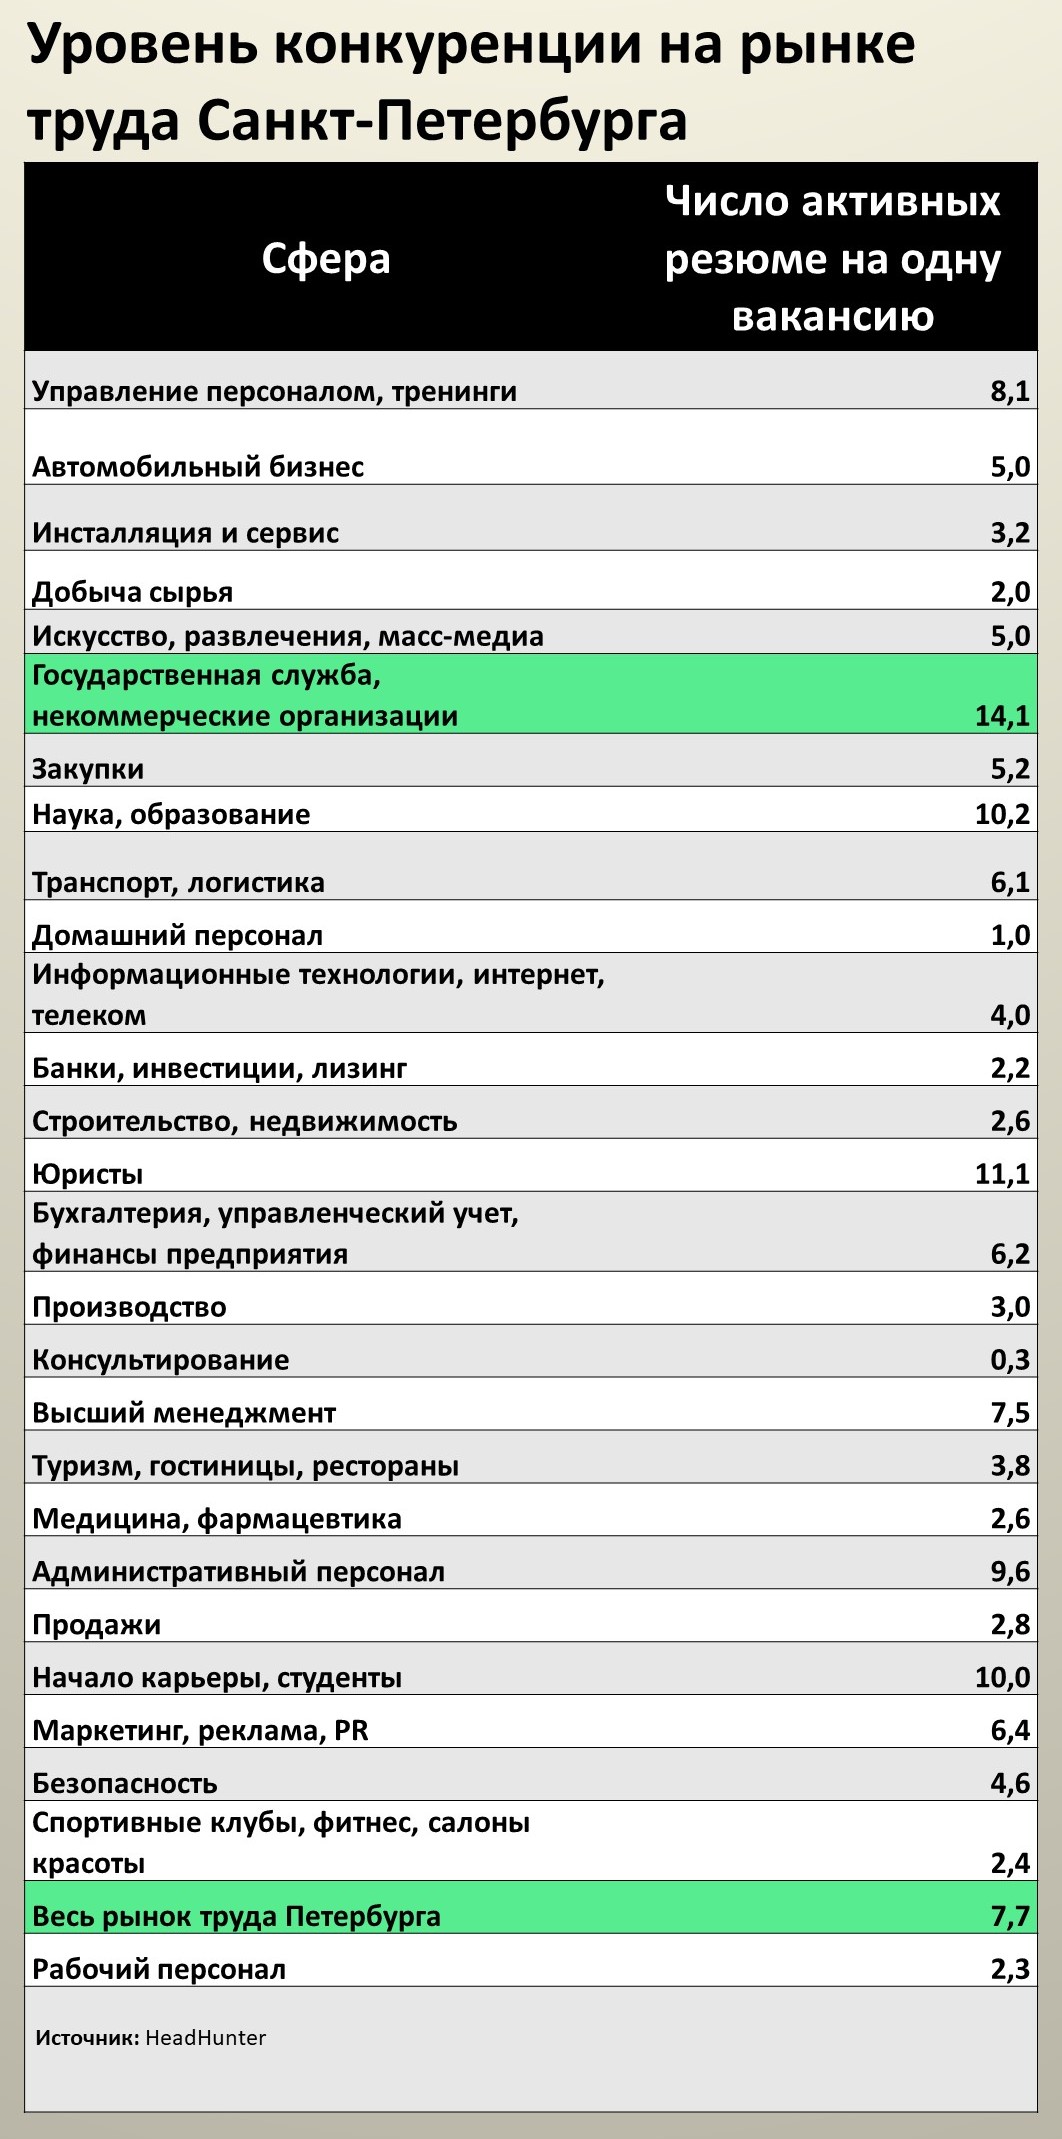 В Петербурге удвоилась конкуренция за рабочие места